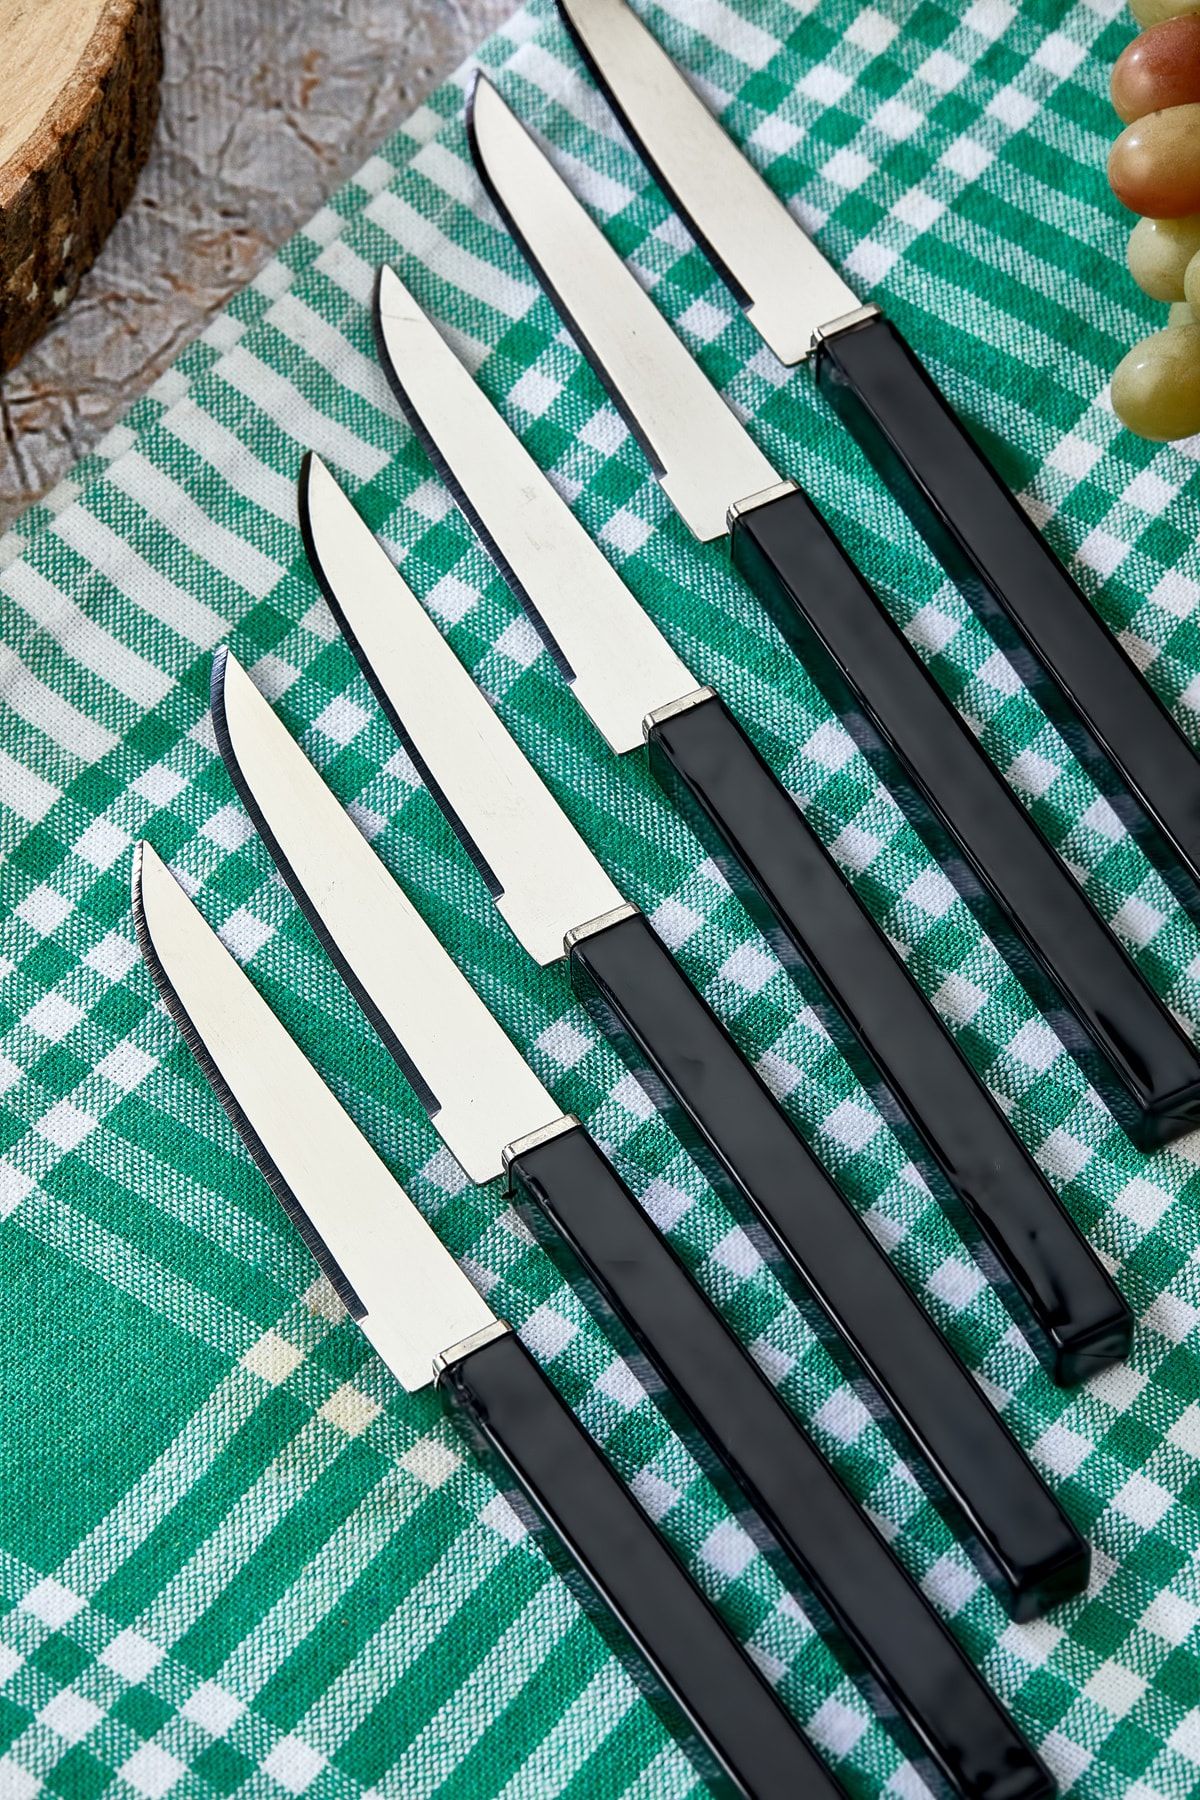 Cooker Lüks Meyve Bıçağı Seti Siyah 6 Parça Bıçak Takımı Kare Saplı Meyve Bıçağı